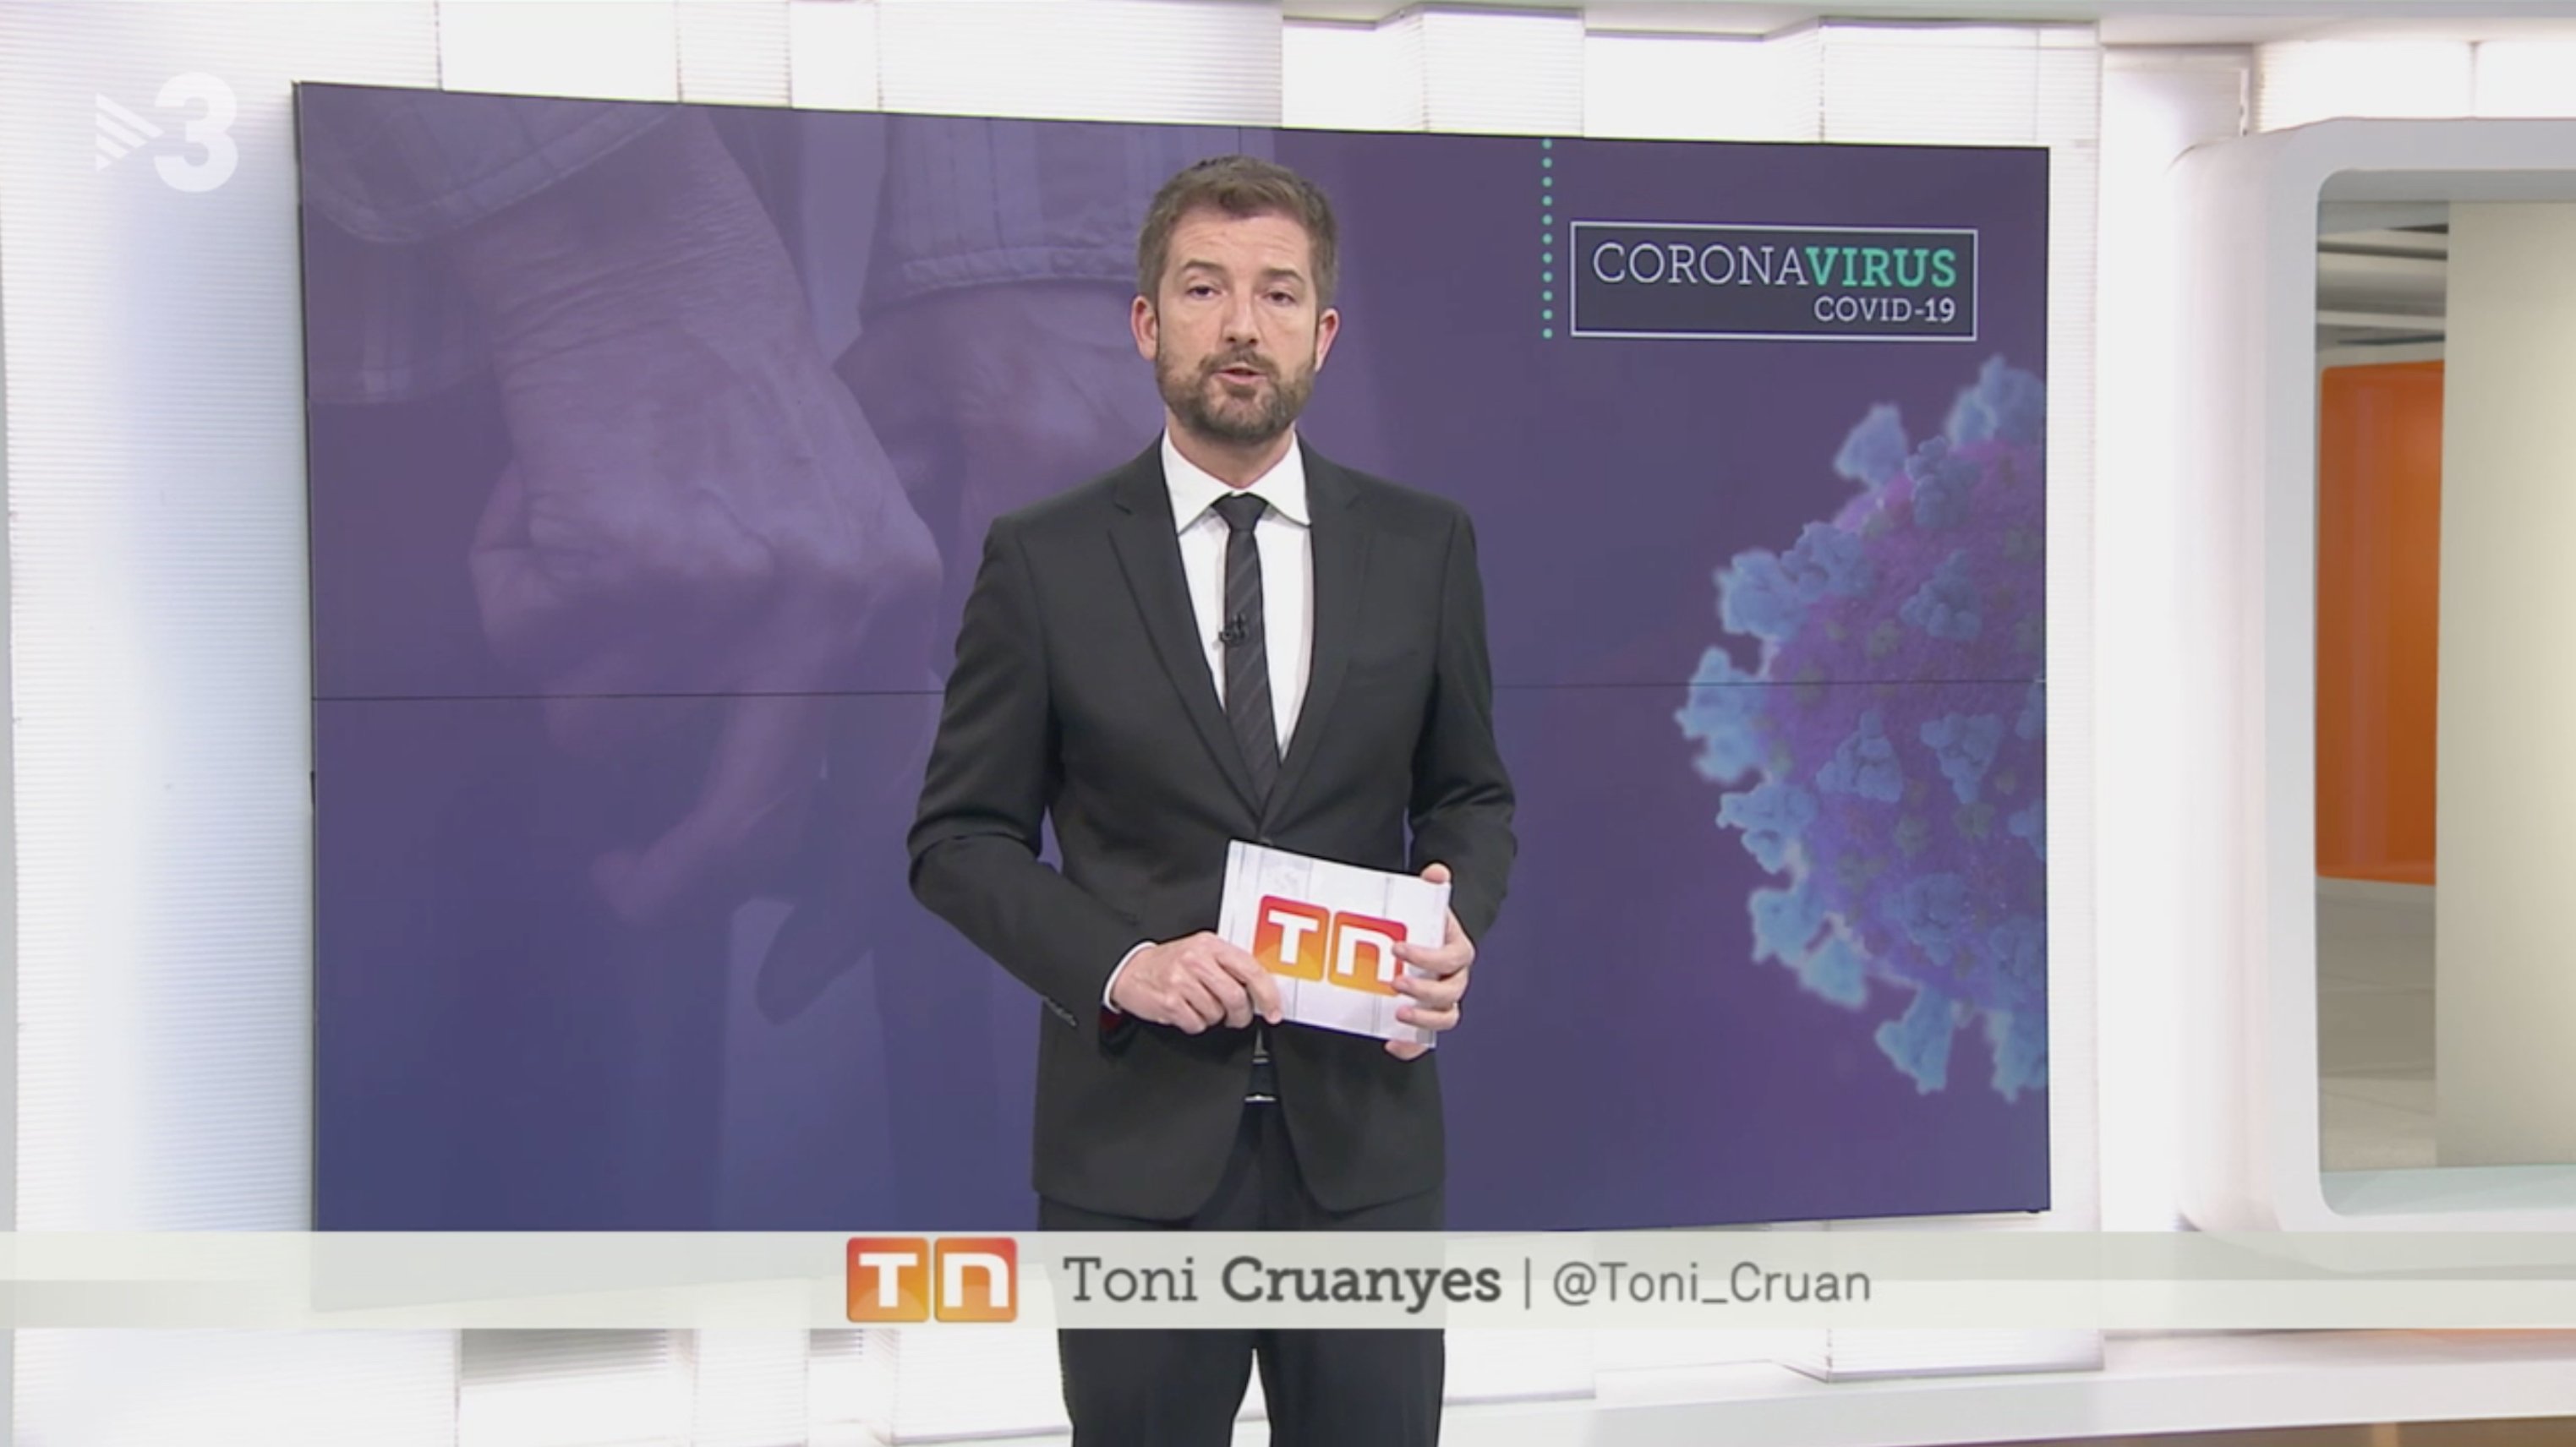 La impactante imagen de Toni Cruanyes: así se trabaja en TV3 por el coronavirus